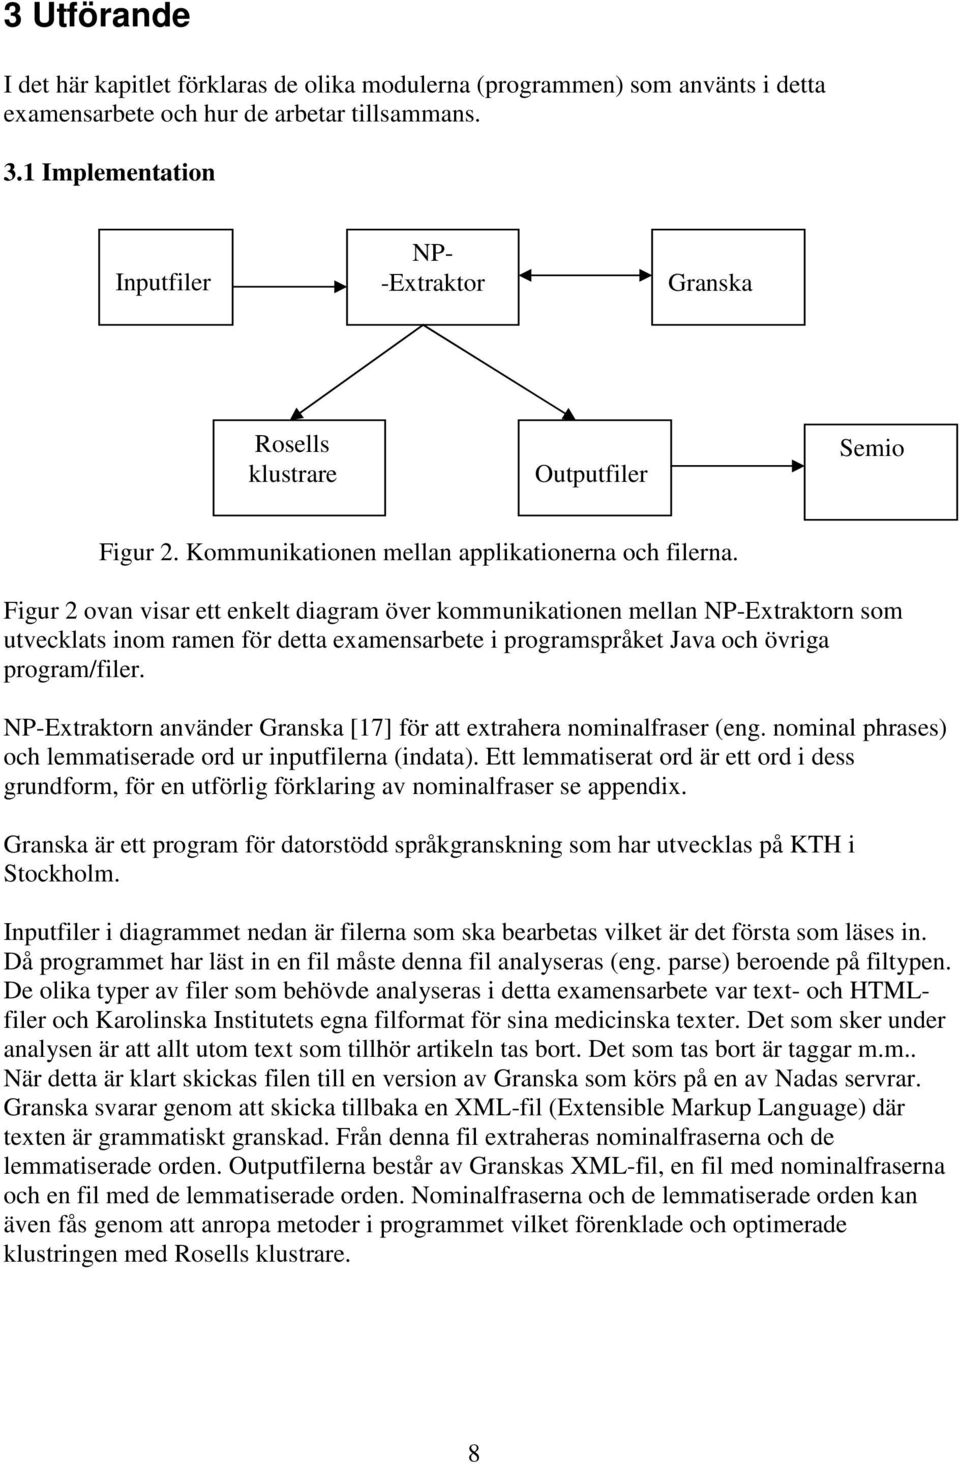 Figur 2 ovan visar ett enkelt diagram över kommunikationen mellan NP-Extraktorn som utvecklats inom ramen för detta examensarbete i programspråket Java och övriga program/filer.